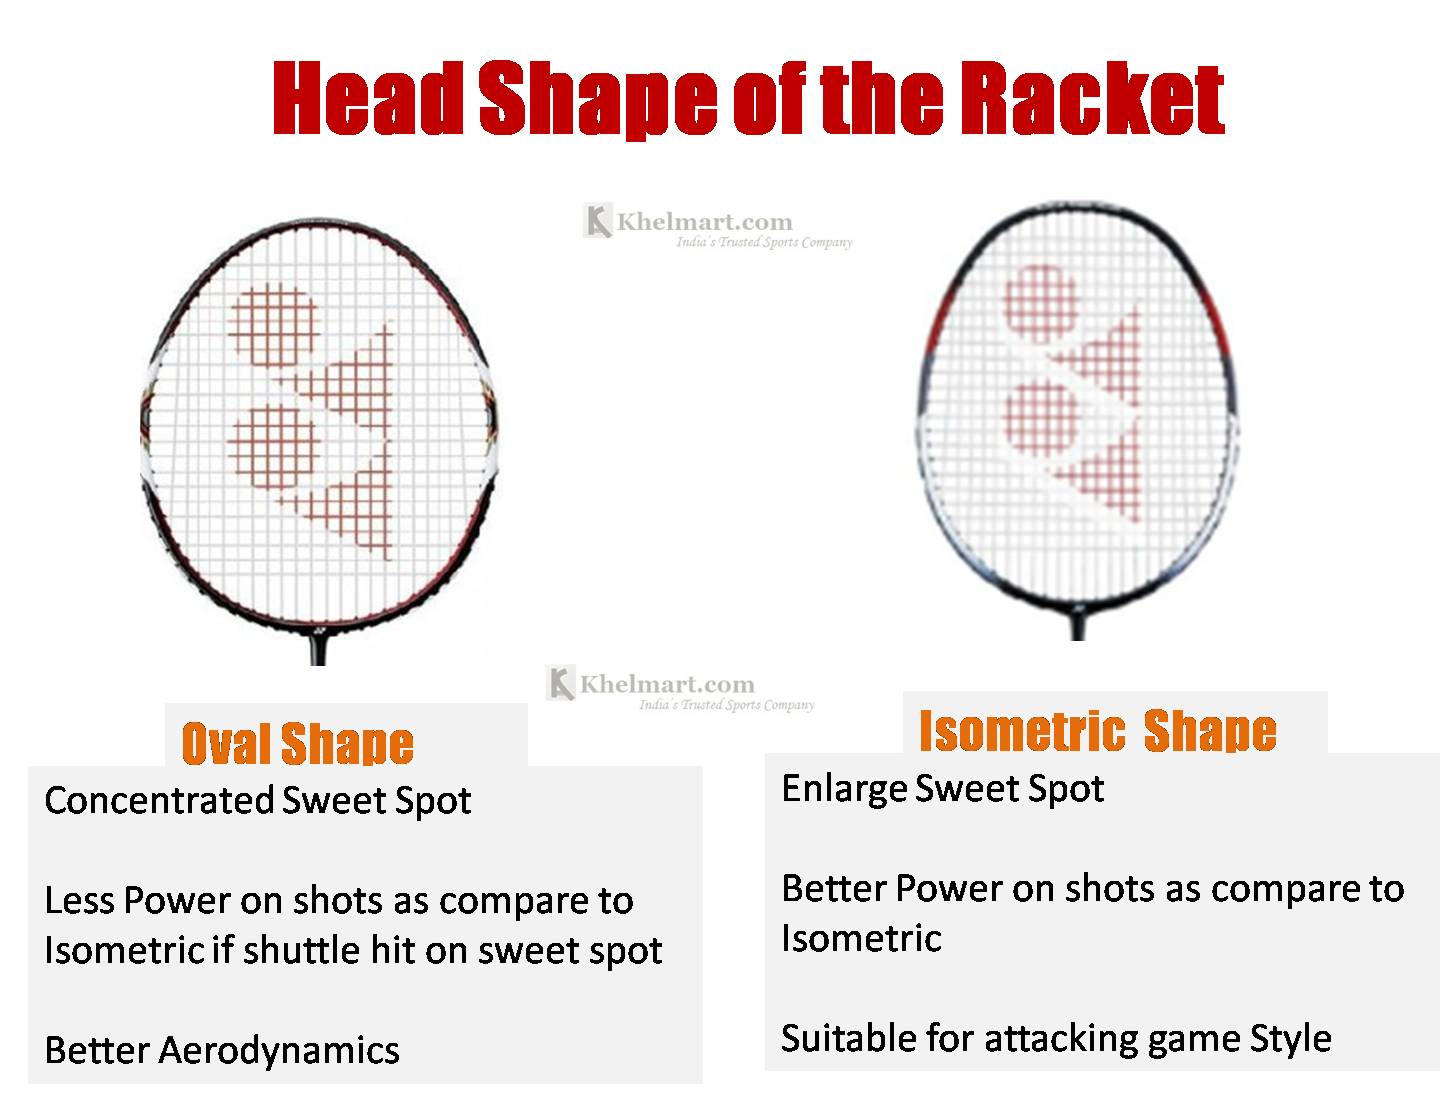 Racket_Head_SHape_Badminton_racket_Khelmart.jpg